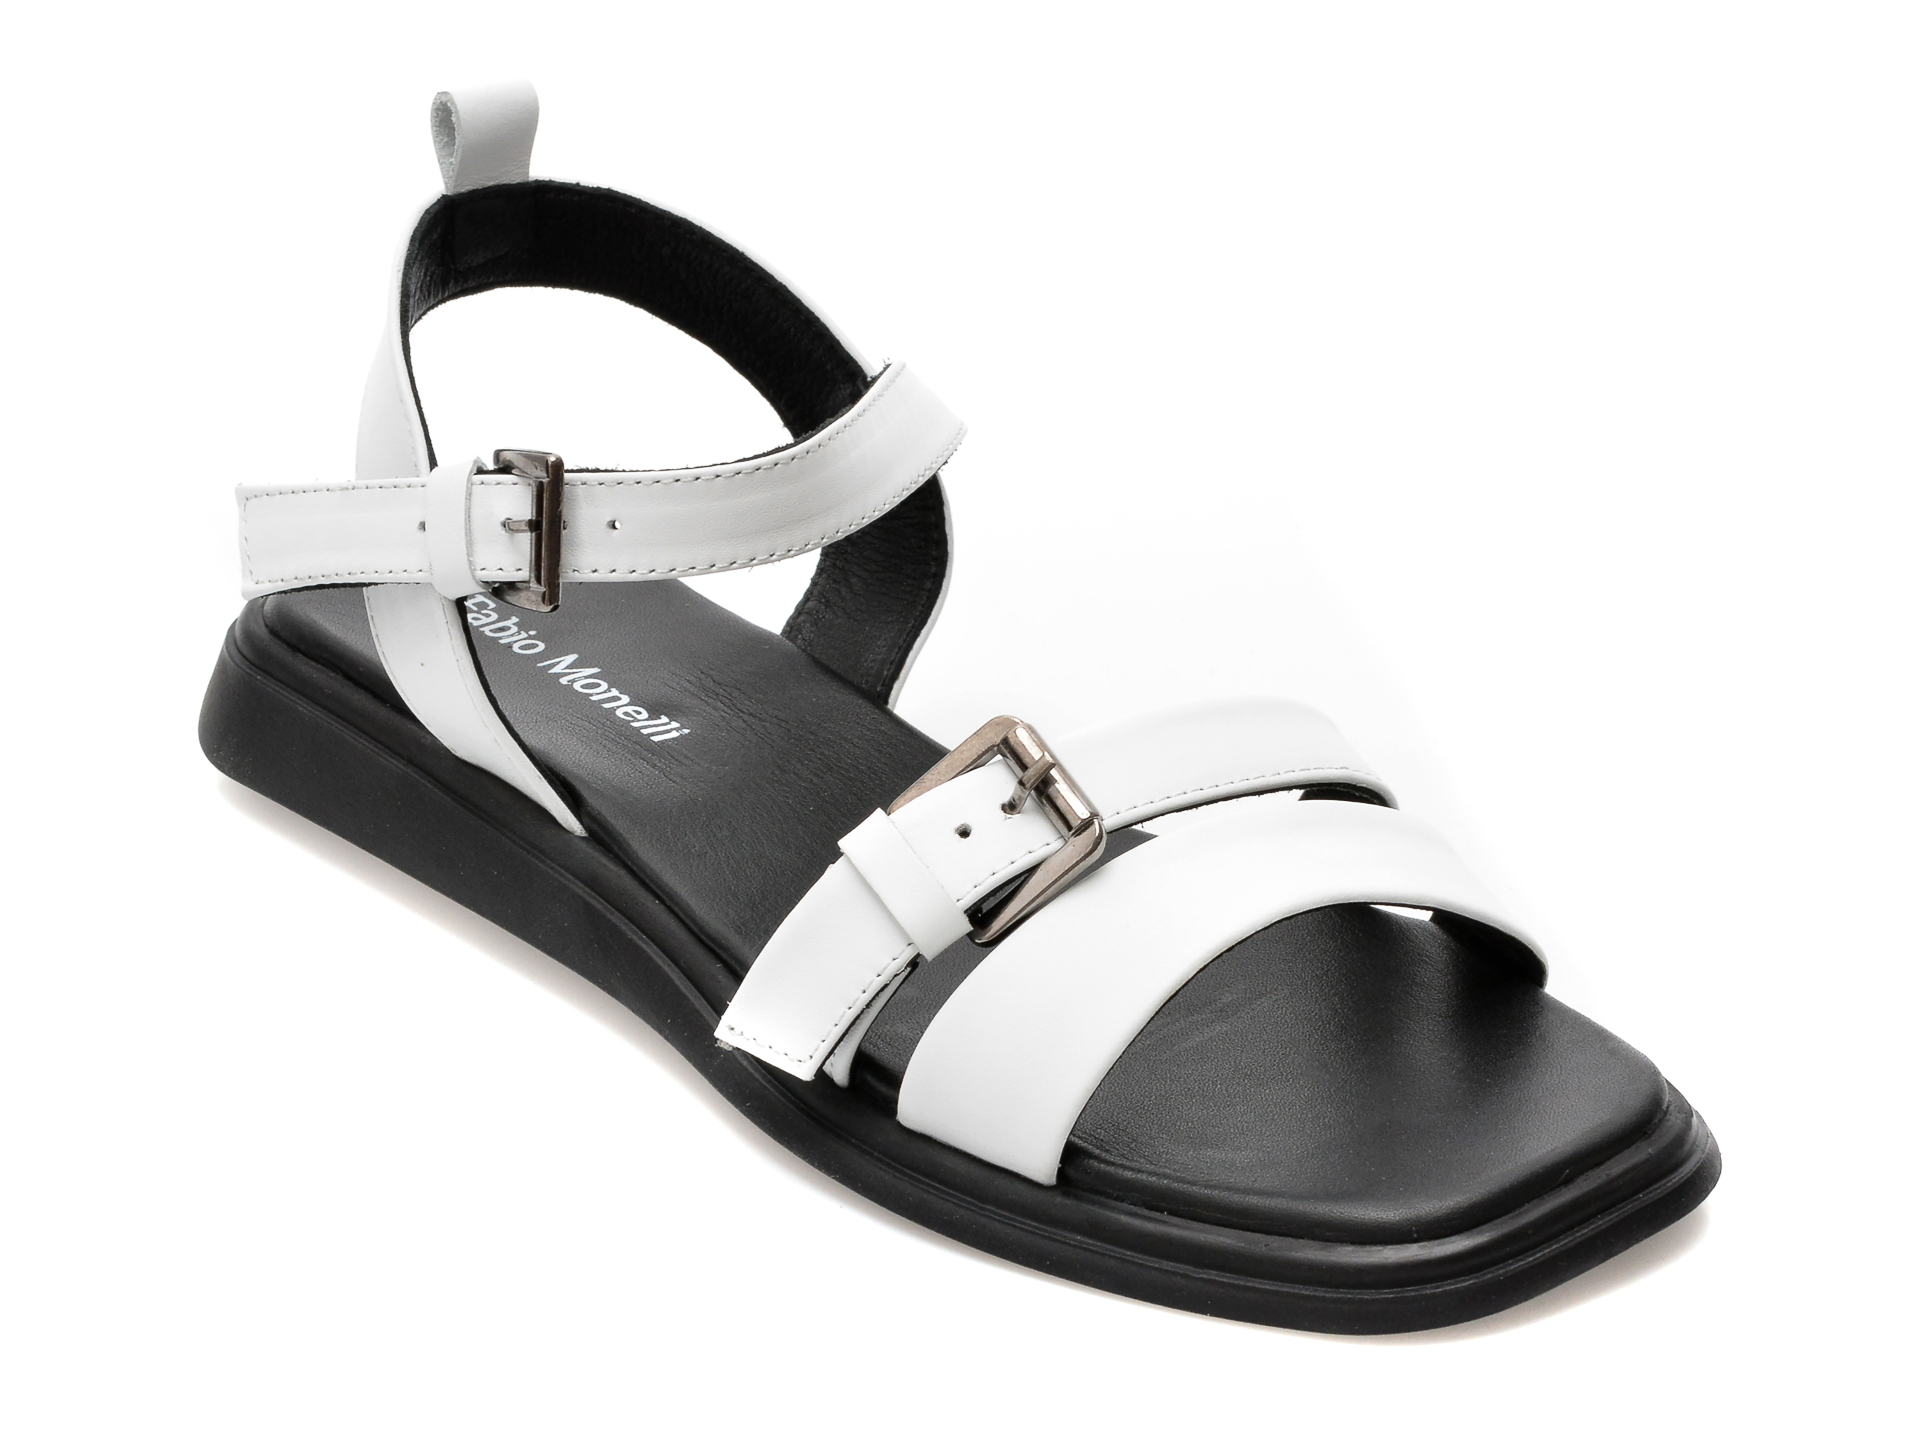 Sandale FABIO MONELLI albe, 694, din piele naturala /femei/sandale